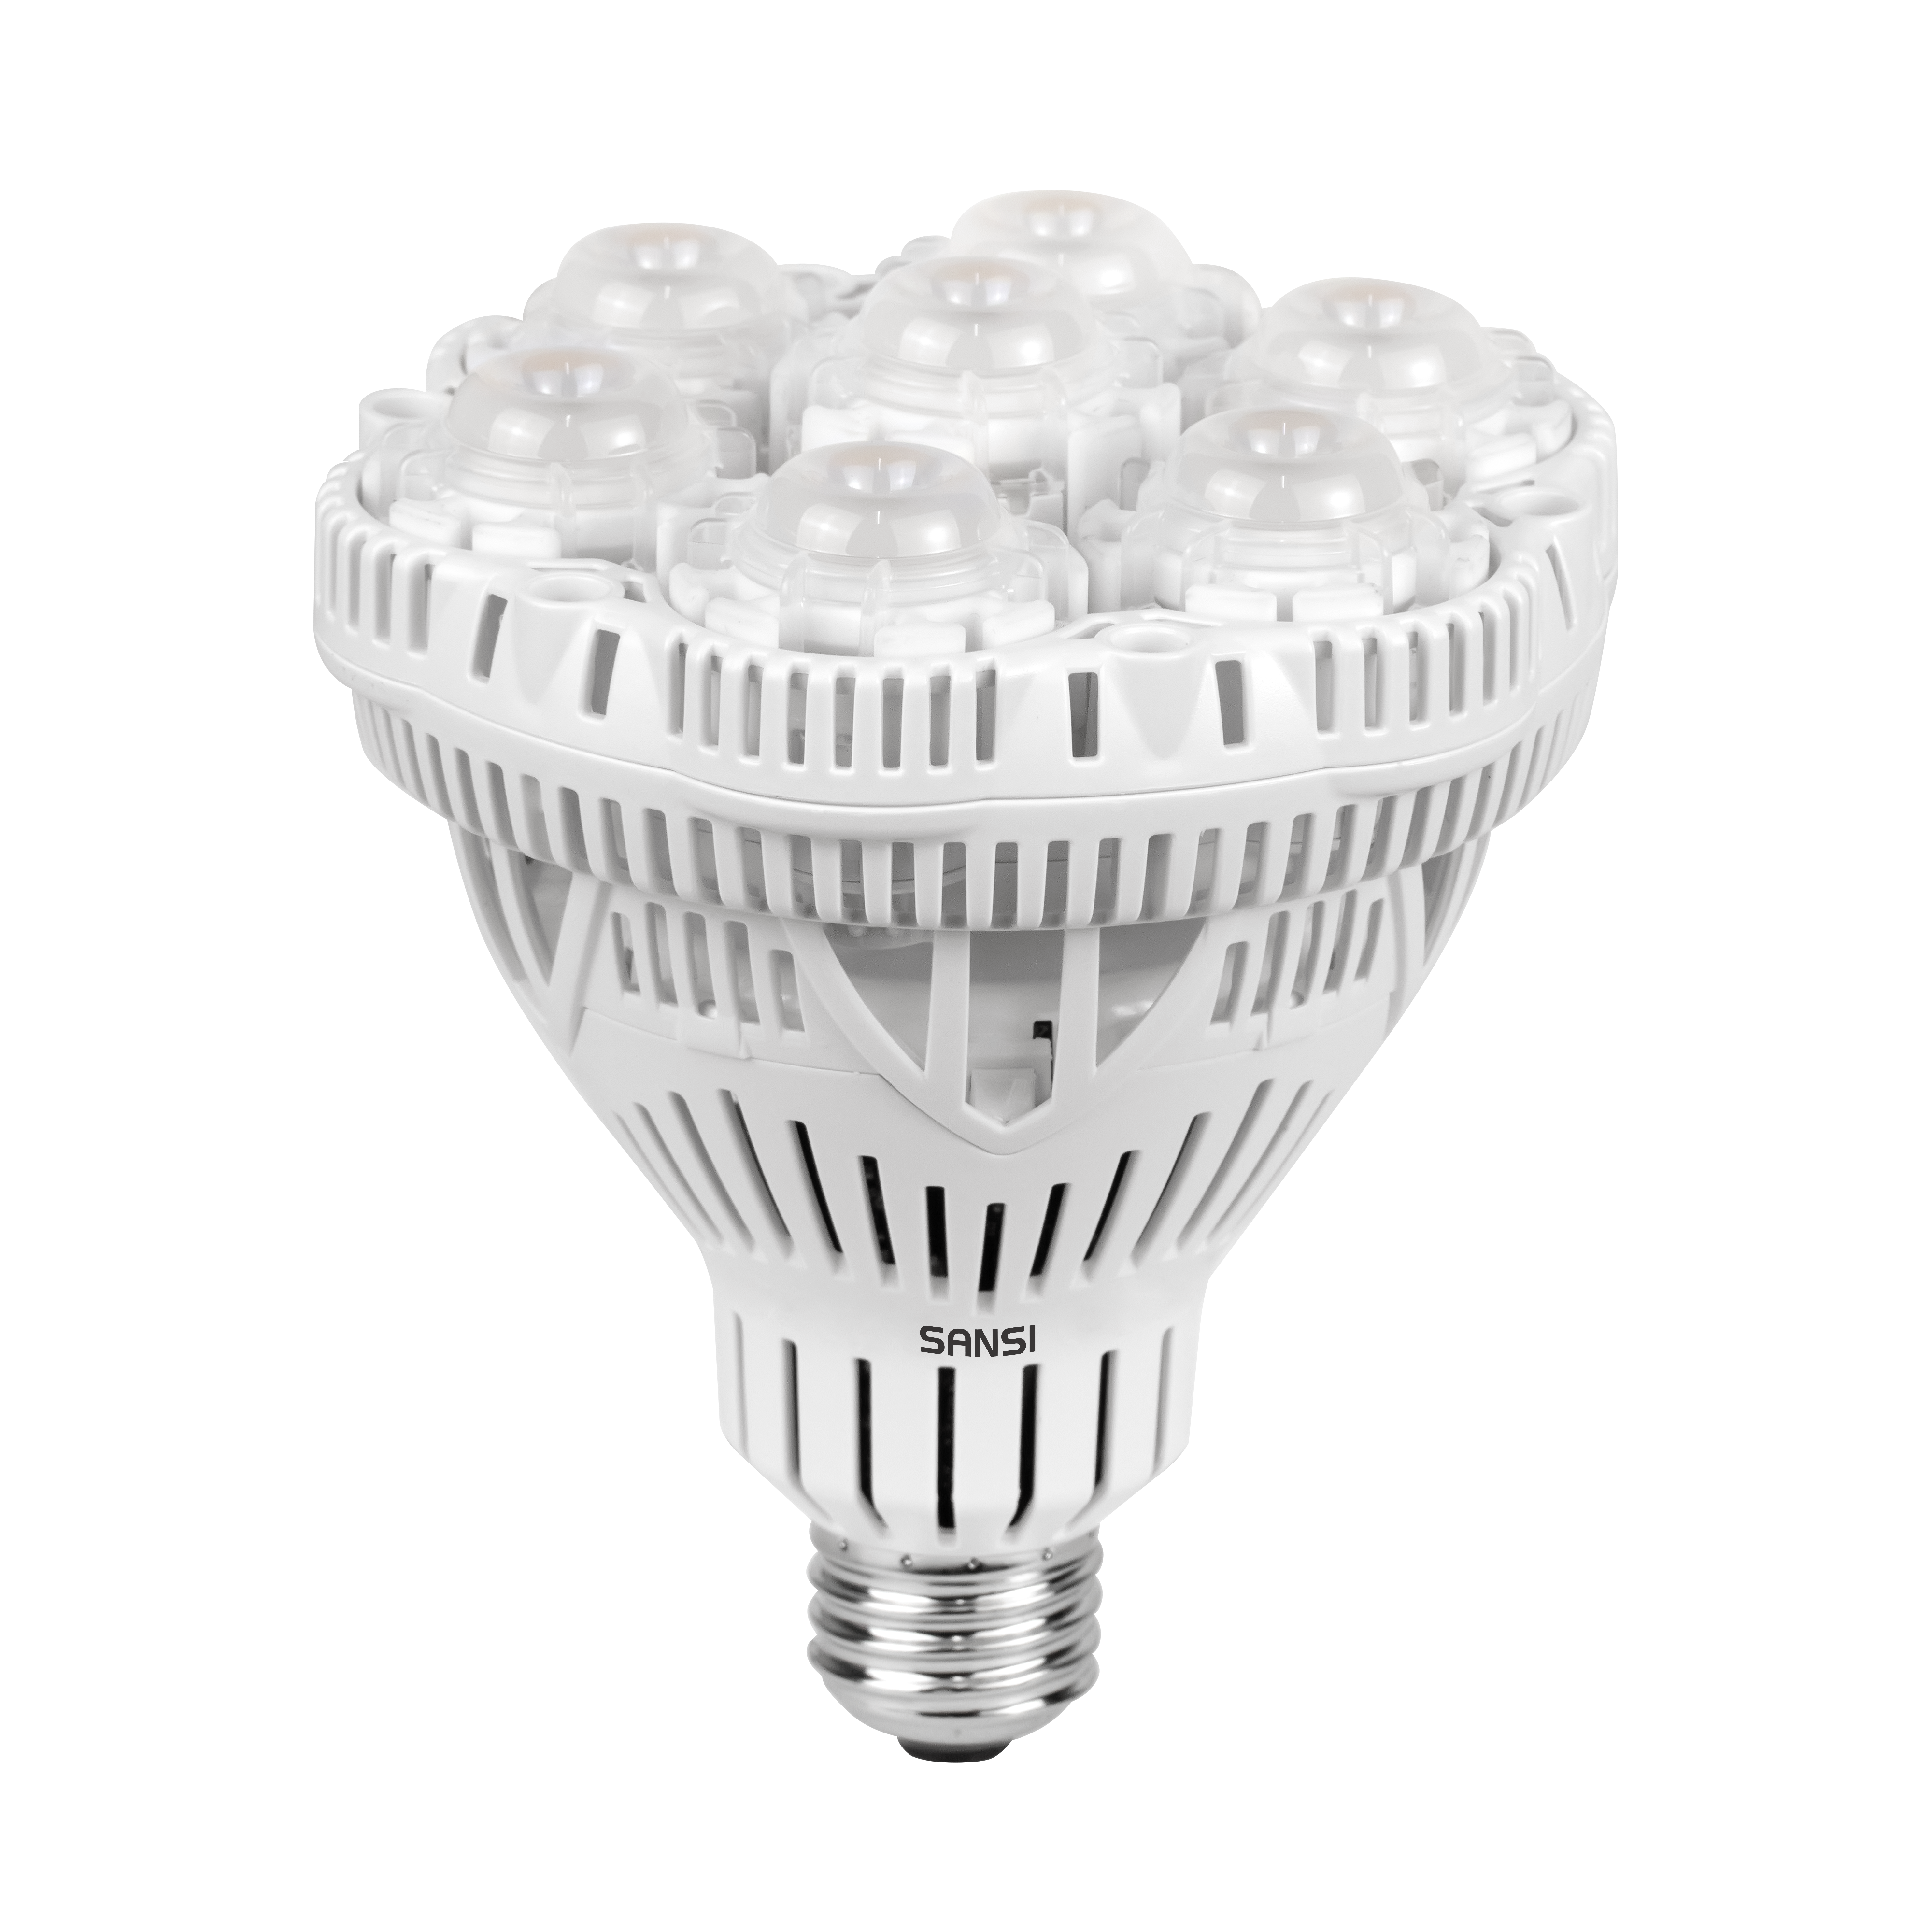 SANSI Lampe LED Horticole 36W pour Culture Végétale, 400W Équivalente  Ampoule de Croissance Plante E27 à Spectre Complet, LED Grow Light pour  Serre Hydroponique Tente de Culture (PPF: 65 μmol/s) : 